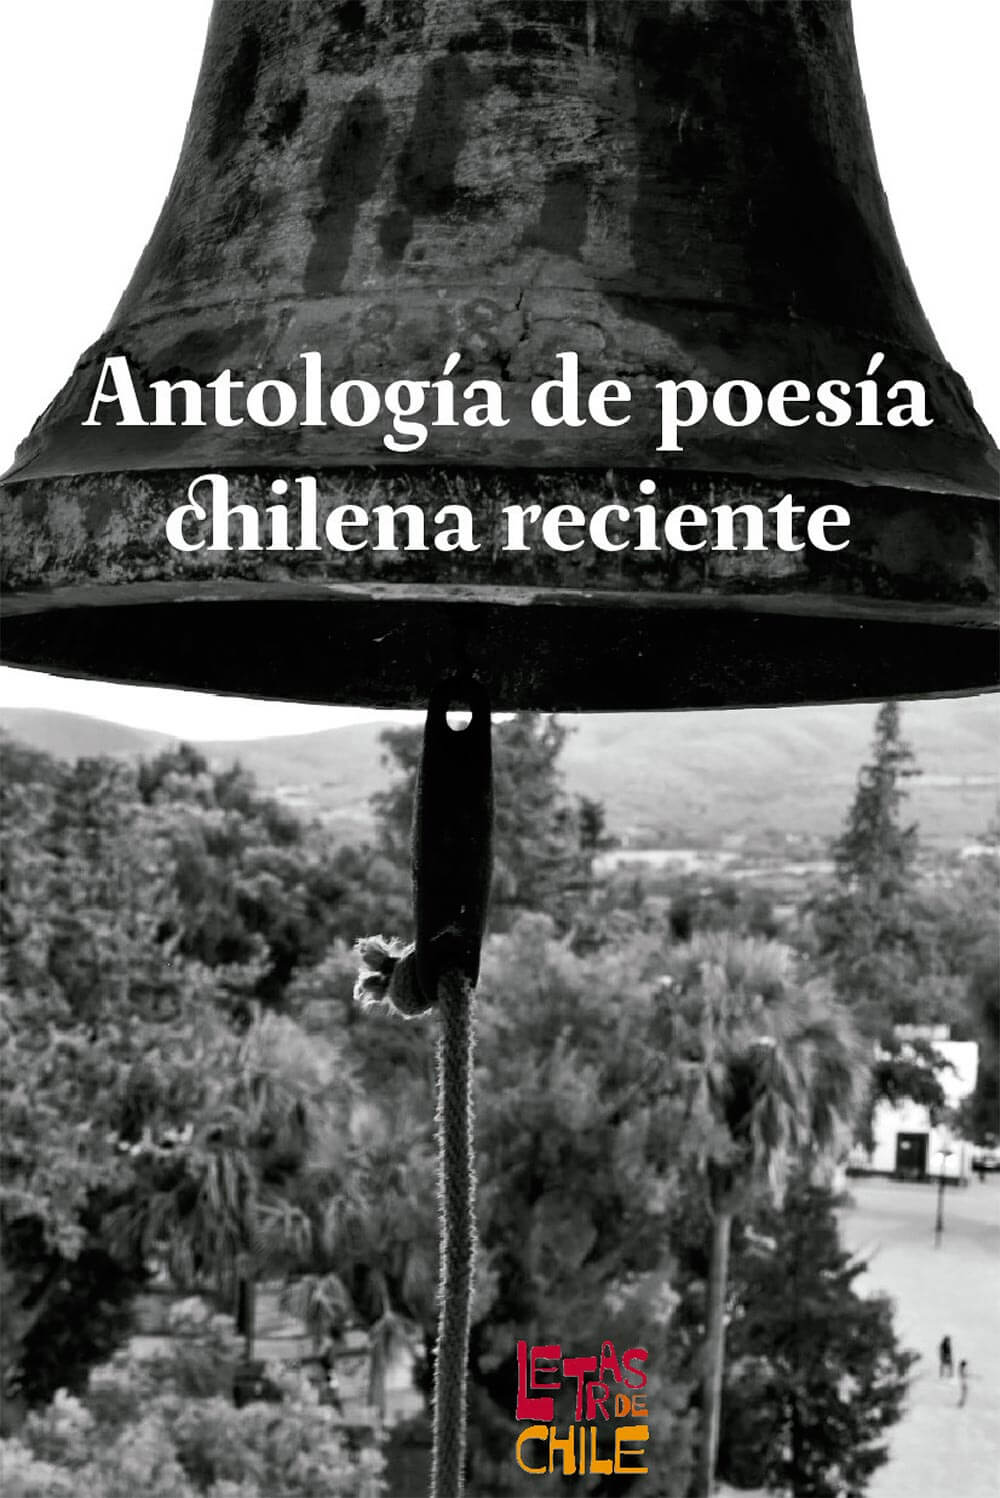 Antologia de poesia chilena reciente 20210809